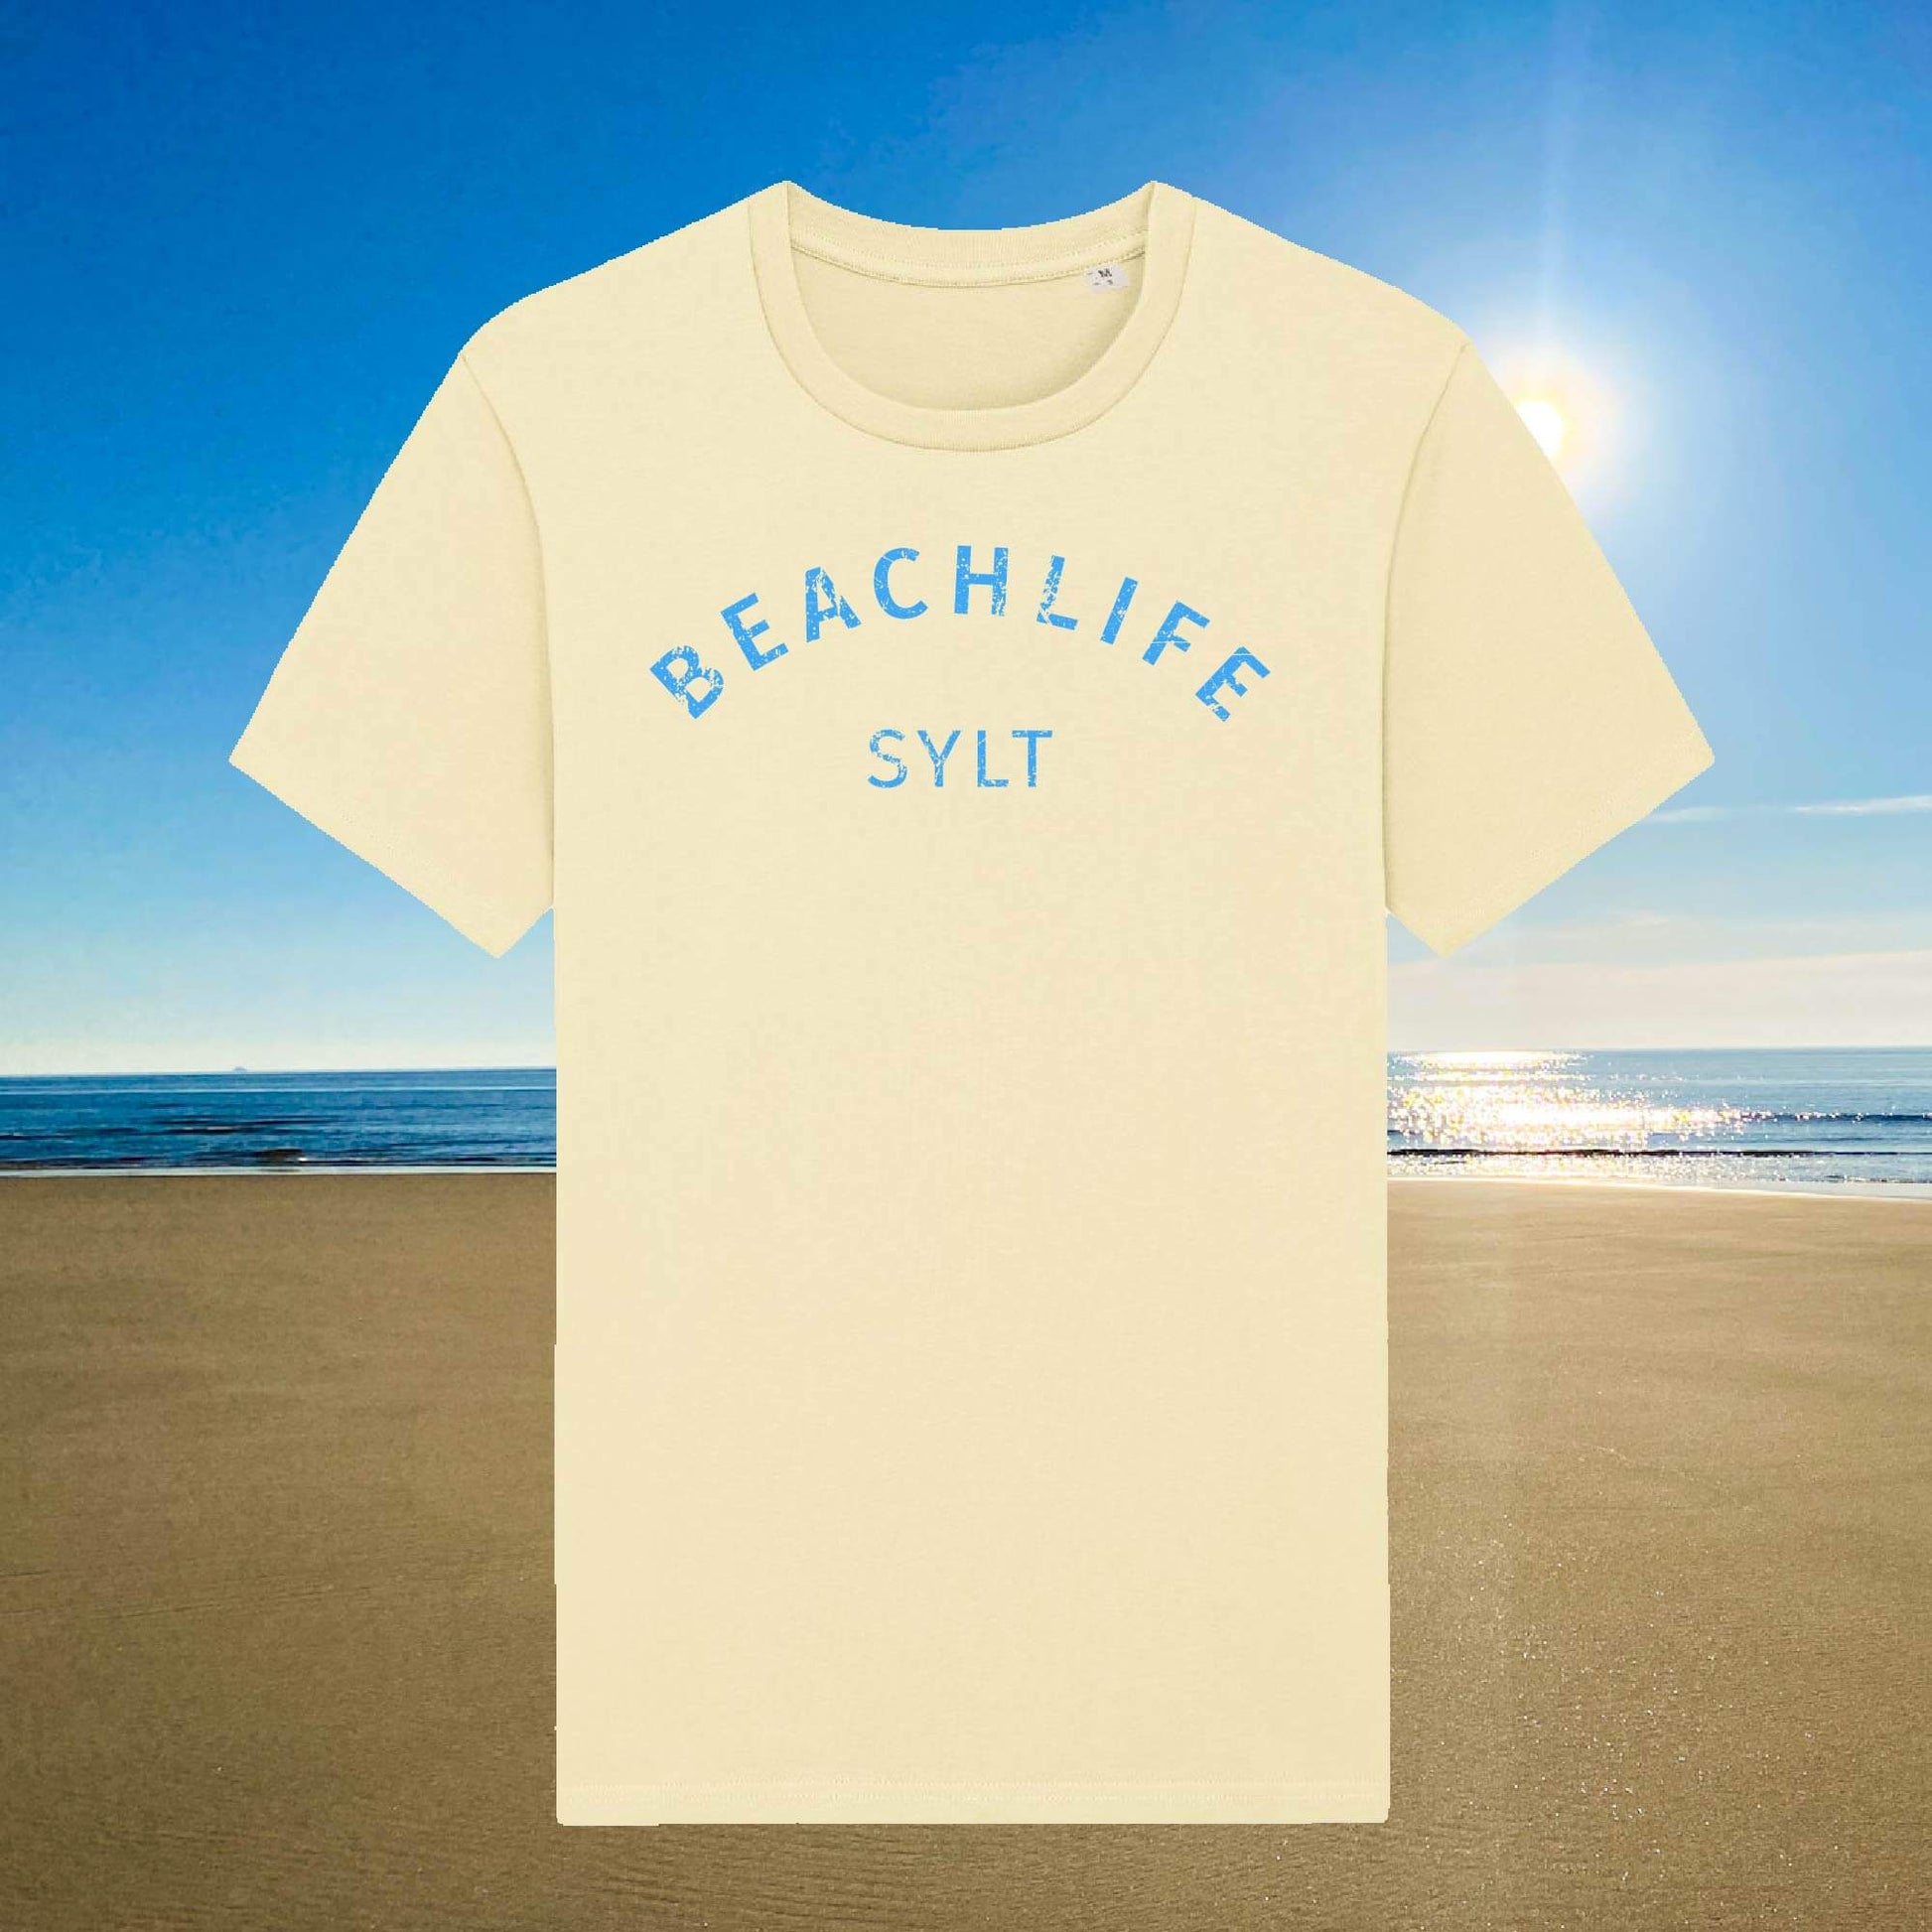 Sylt T-Shirt Beachlife in hellgelb mit blauem Aufdruck Beachlife Sylt